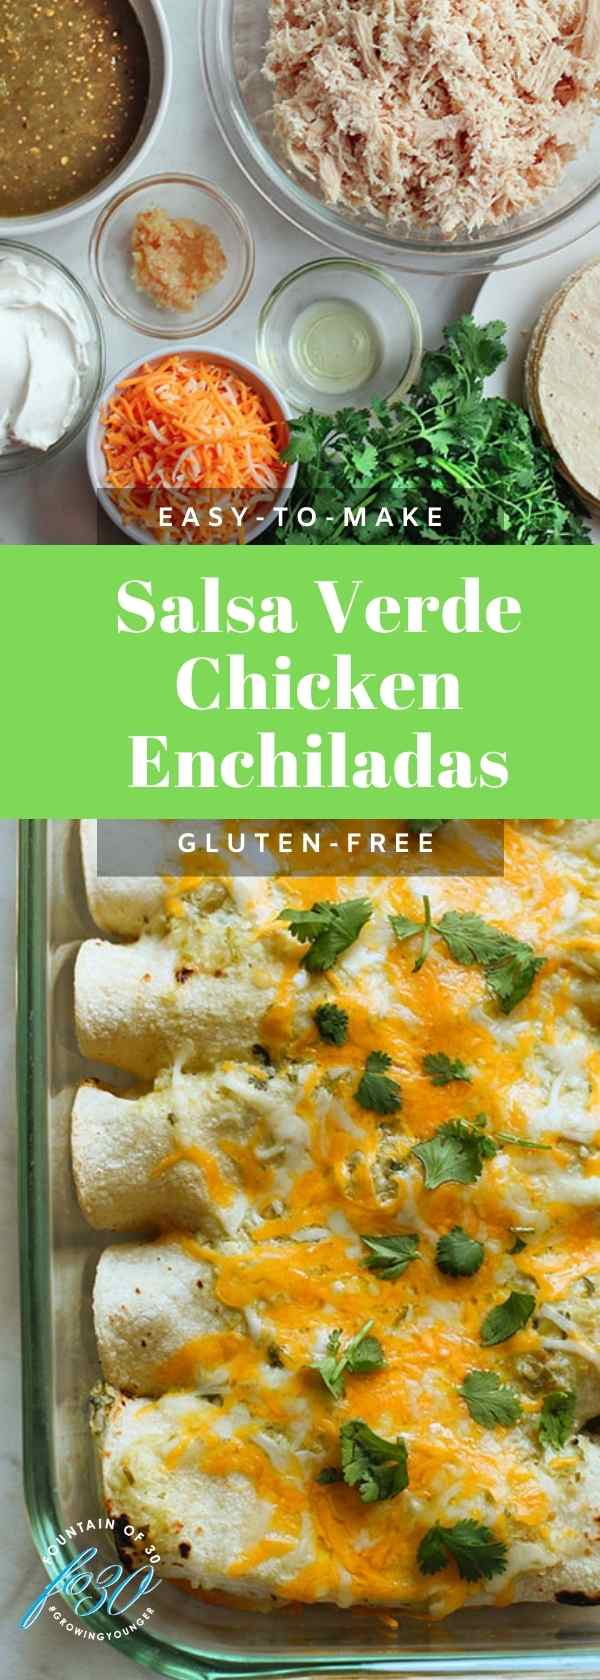 Salsa Verde Chicken Enchiladas fountainof30